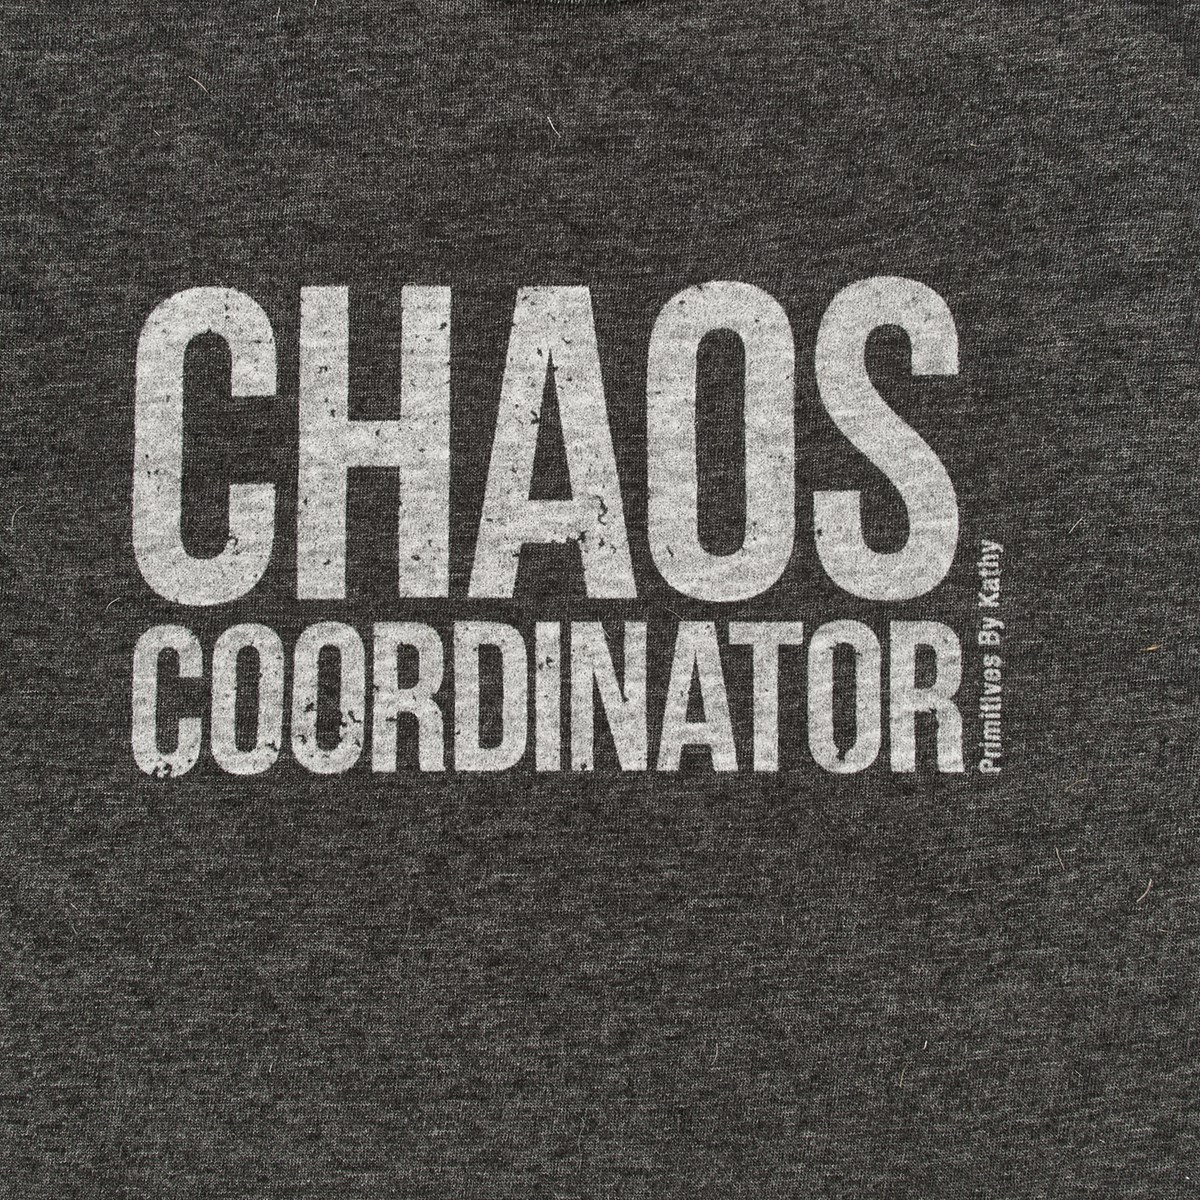 Chaos Coordinator 2XL T-Shirt - Polyester, Cotton